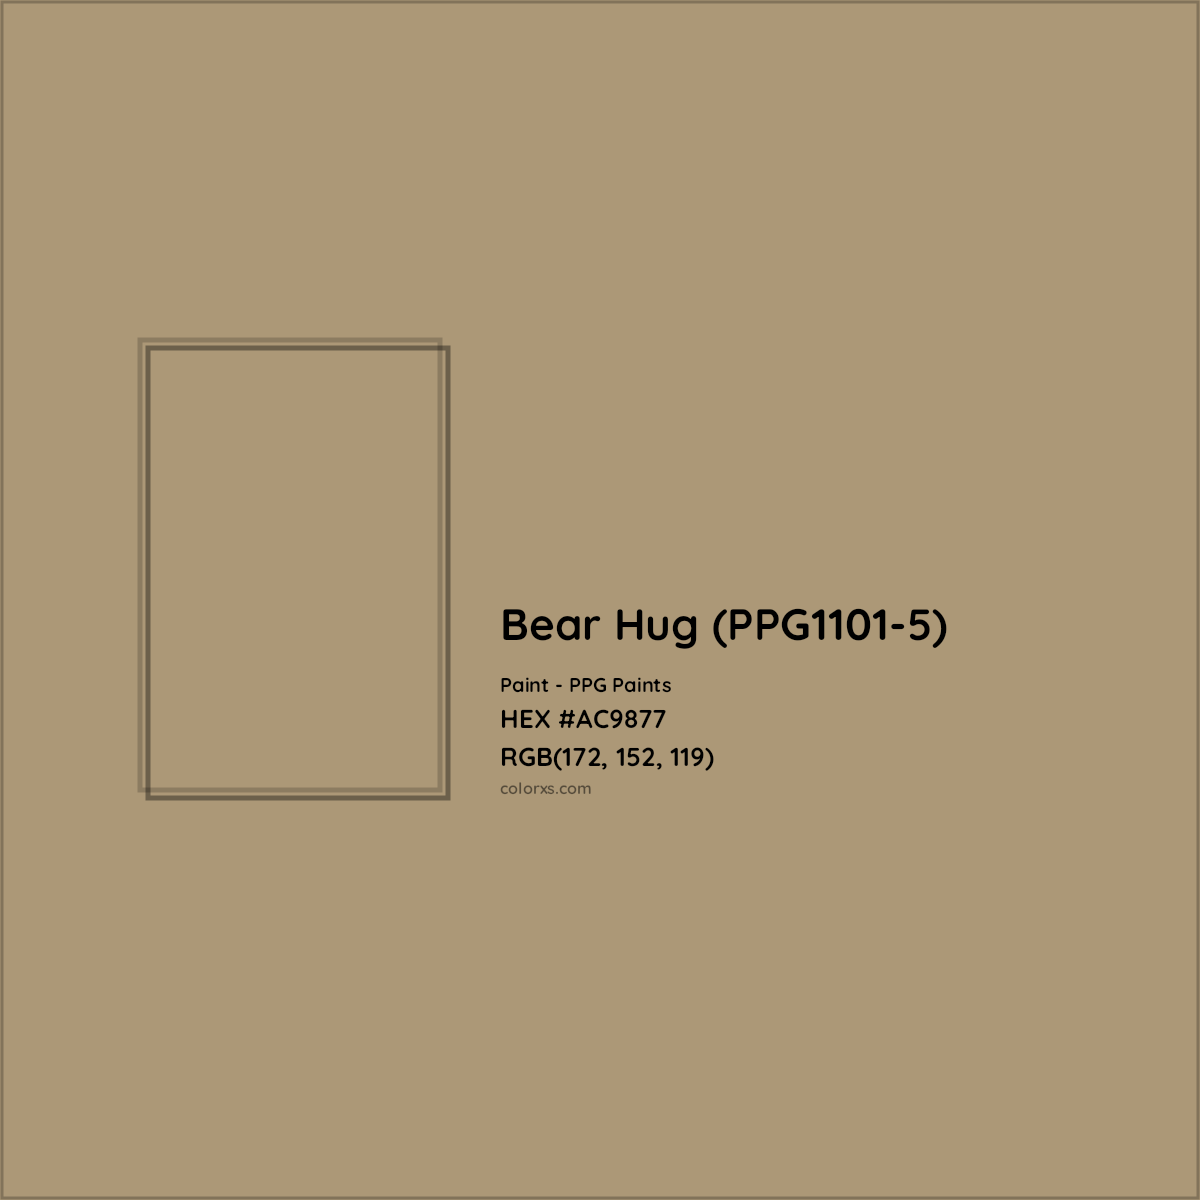 HEX #AC9877 Bear Hug (PPG1101-5) Paint PPG Paints - Color Code